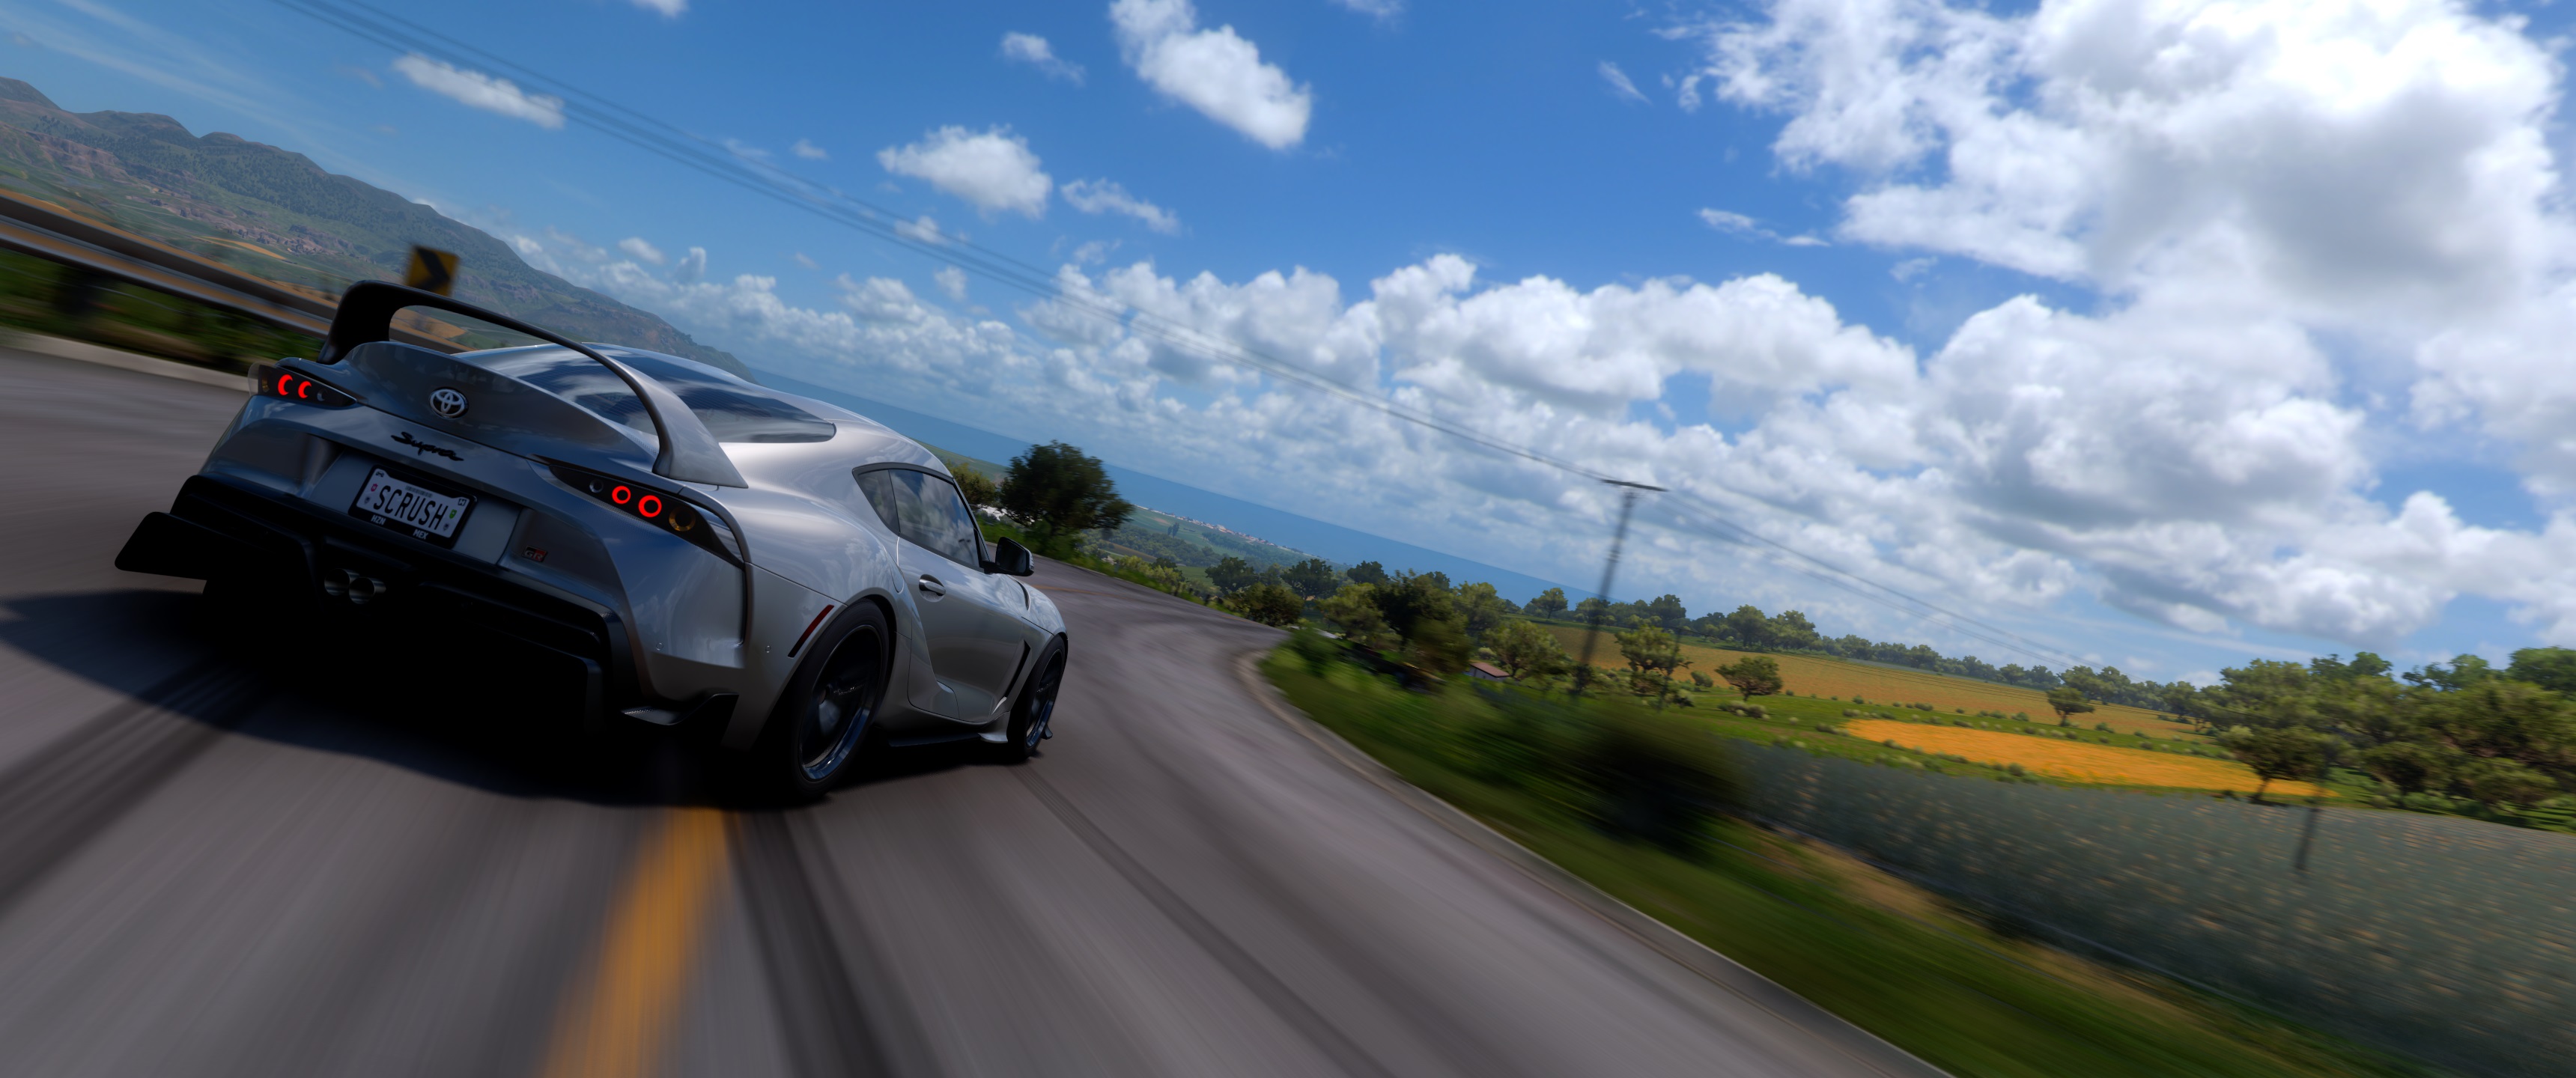 Forza horizon вылетает при запуске. Ворза хоракзер 5. Форза хорайзен 5. Lexus Forza Horizon 5. Forza Horizon 5 обои.